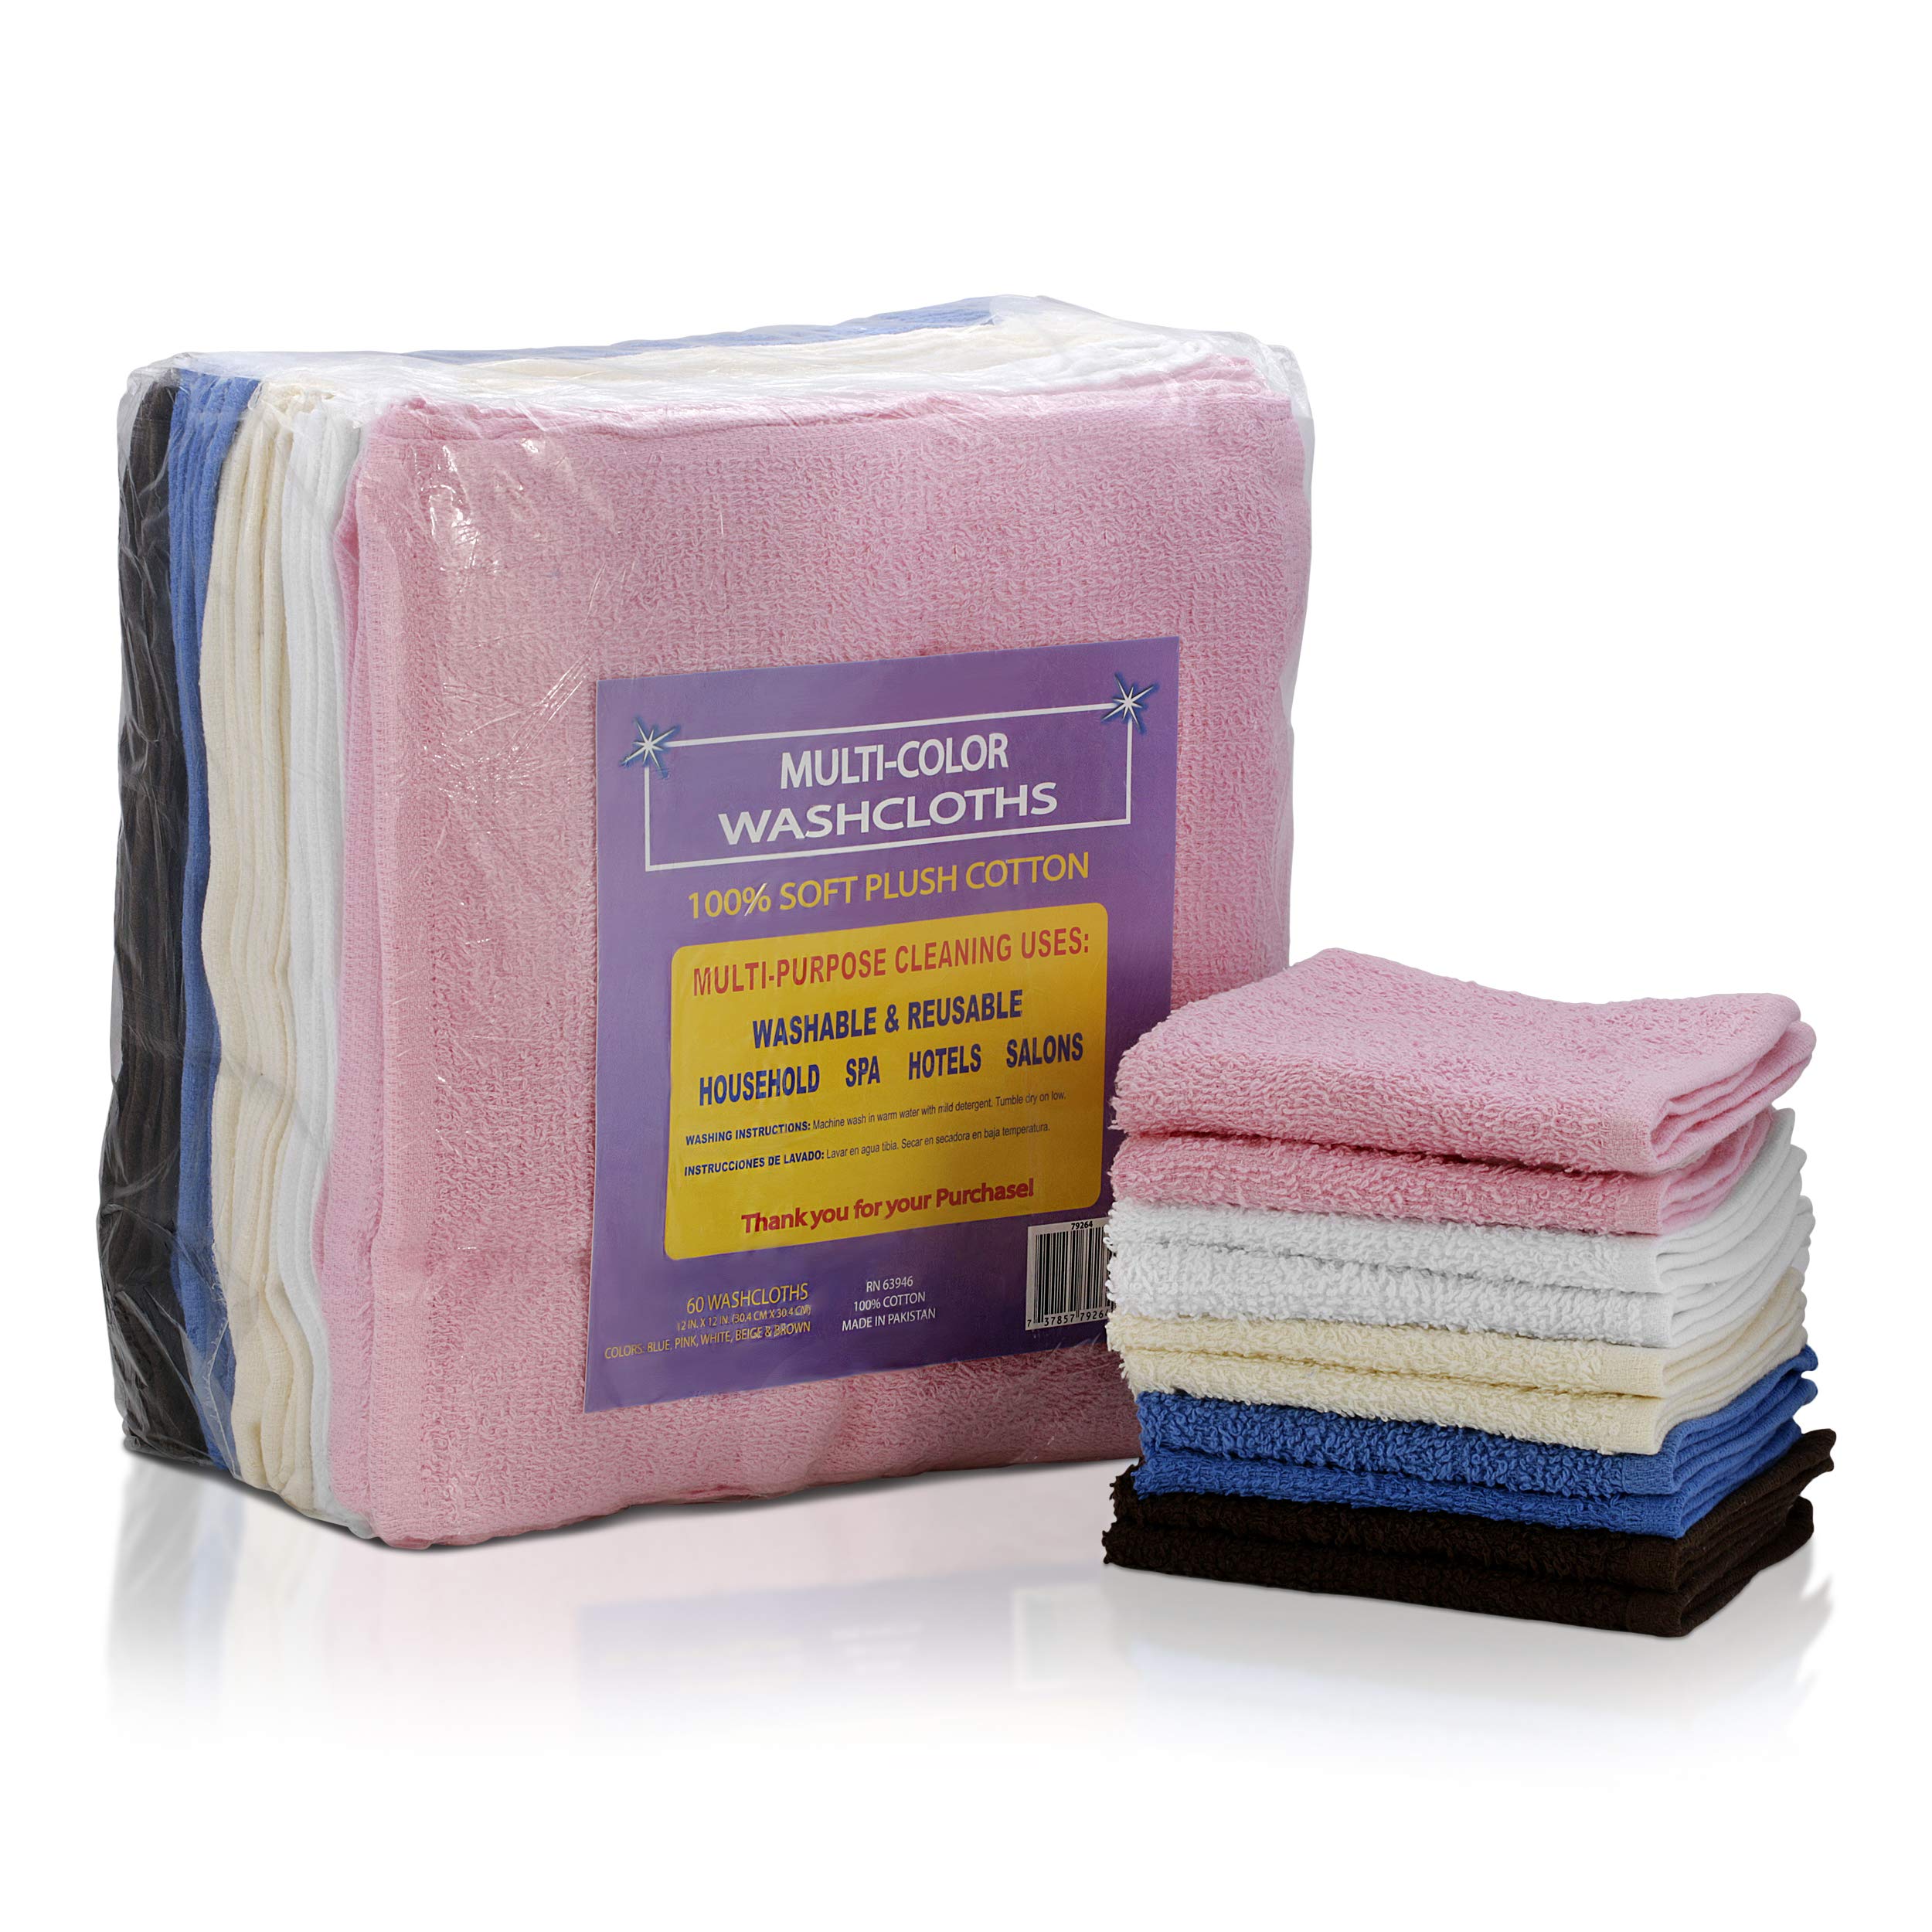 Simpli-Magic 79264 Cotton Washcloths, Size: 12”x12”, Multi Color, 50 Pack